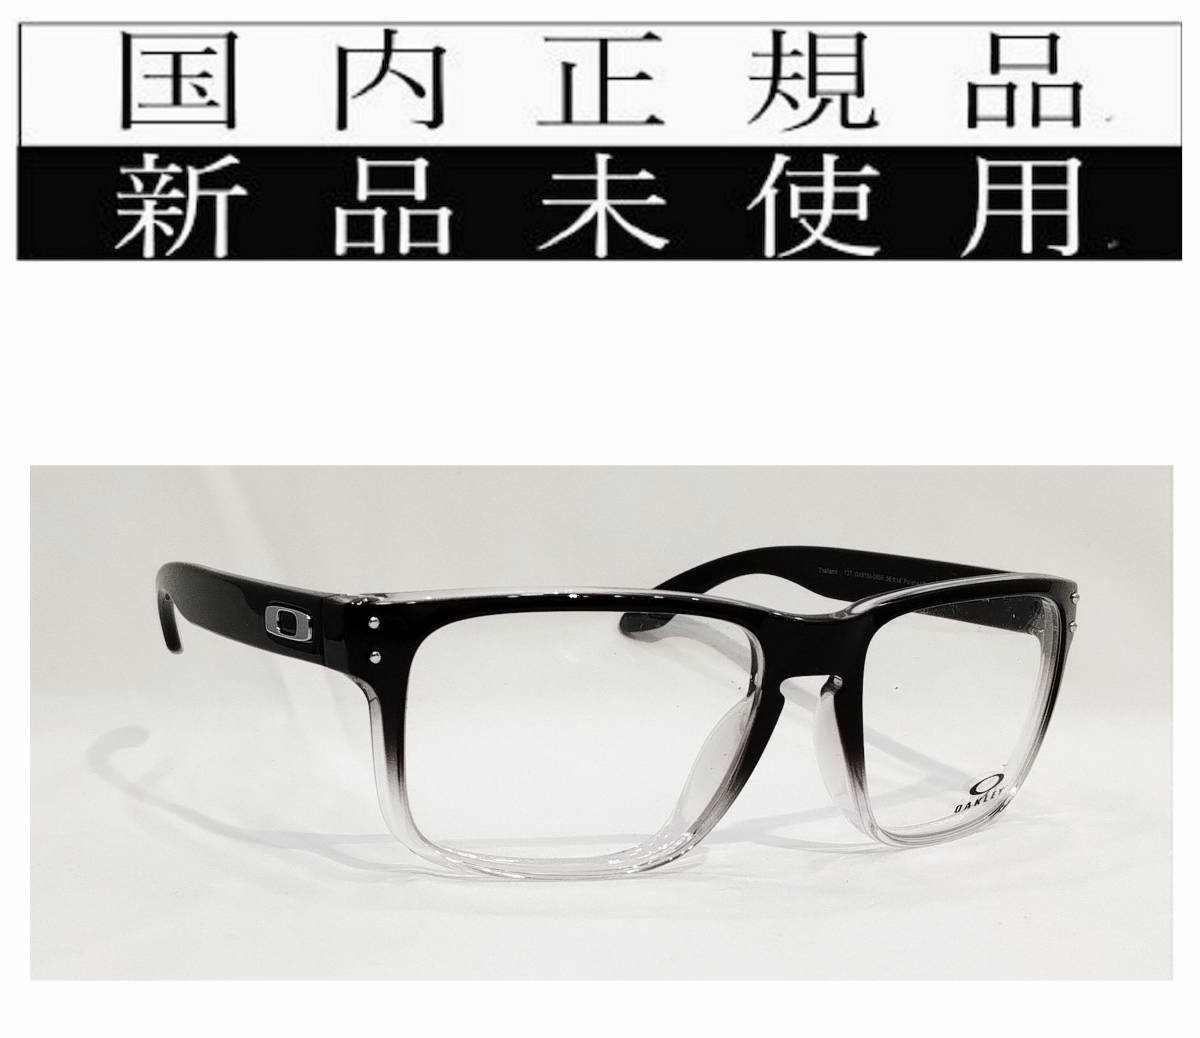 【送料無料/新品】 OX8156-0656 デモレンズ フレーム 眼鏡 ホルブルック オークリー 815606 RX HOLBROOK OAKLEY 国内正規品 セル、プラスチックフレーム